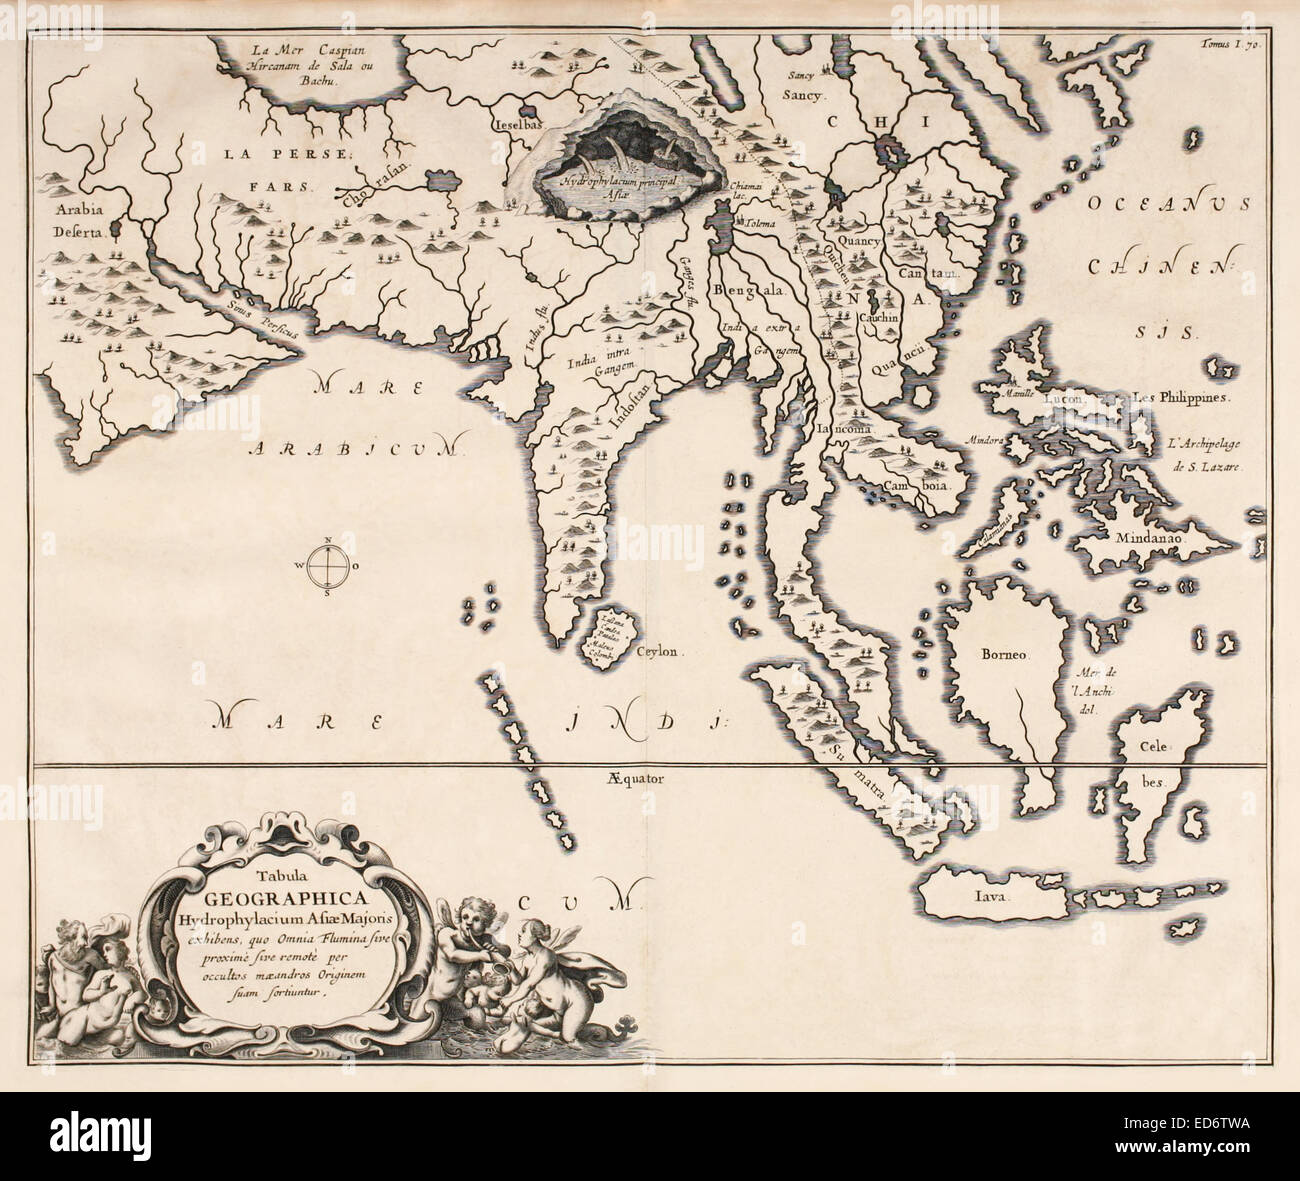 17. Jahrhundert-Karte von Asien: "Tabula Geographica Hydrophylacium Asiae Majoris Exhibens". Siehe Beschreibung für mehr Informationen. Stockfoto